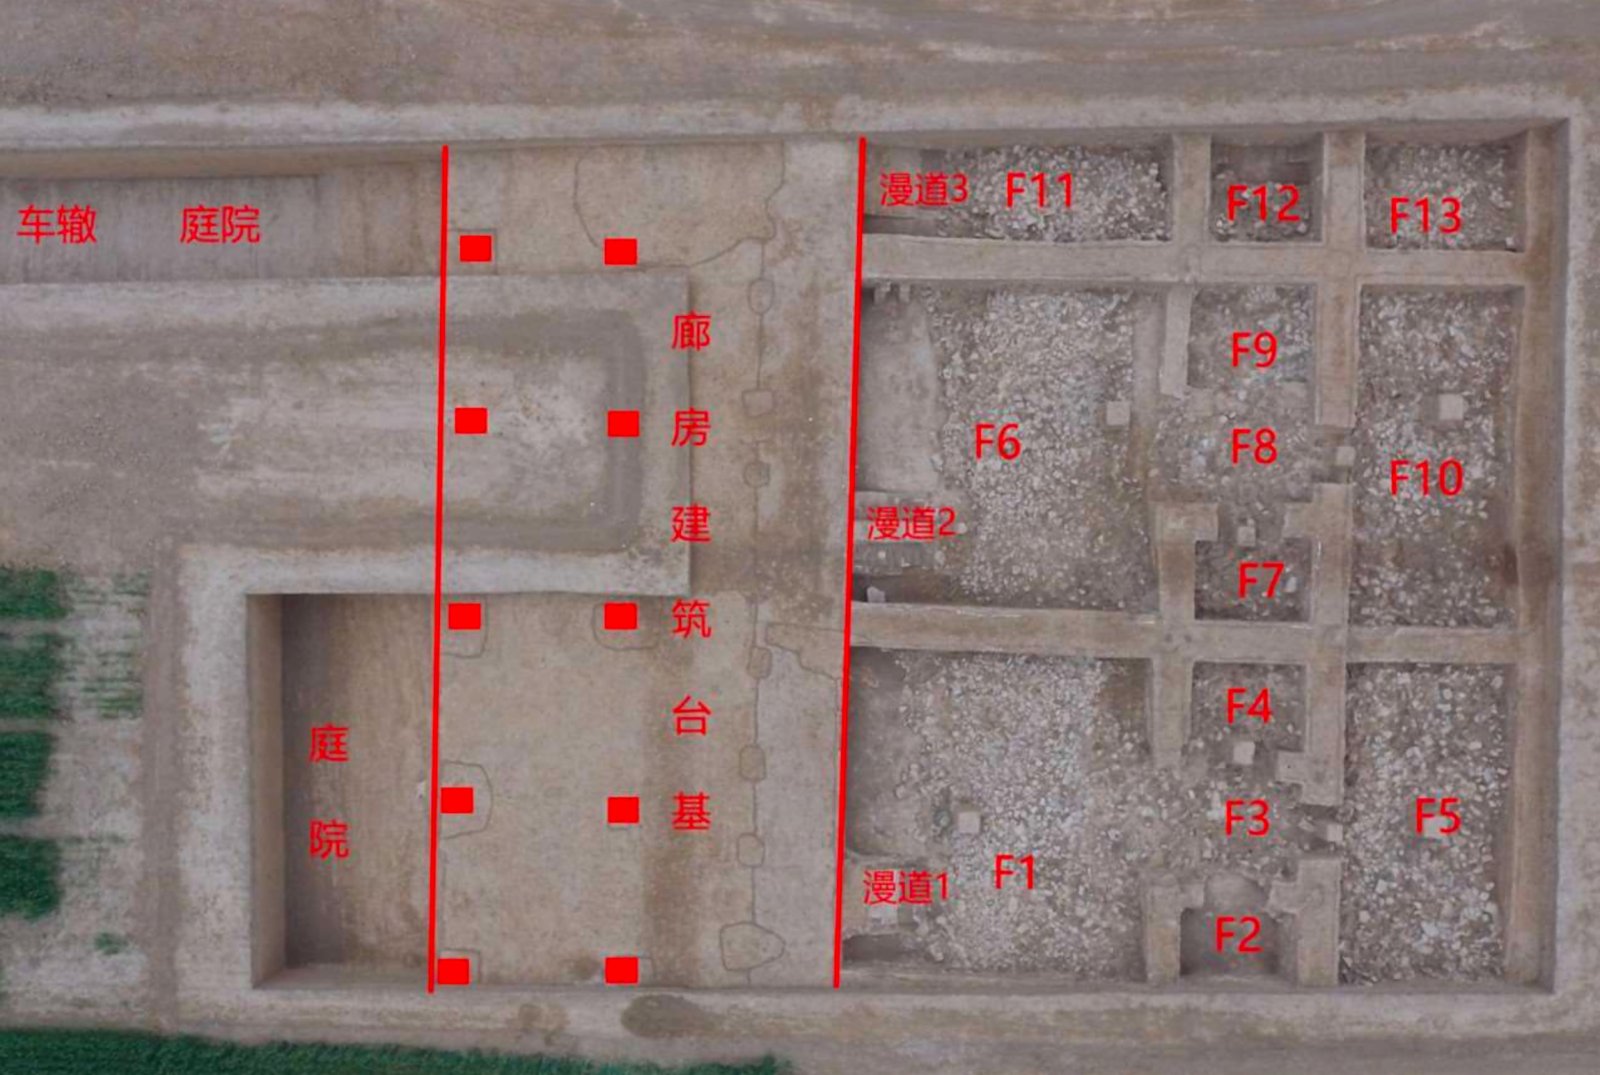 這是顯陽殿北側廊房與北排房布局（右為北，新華社資料照片）。